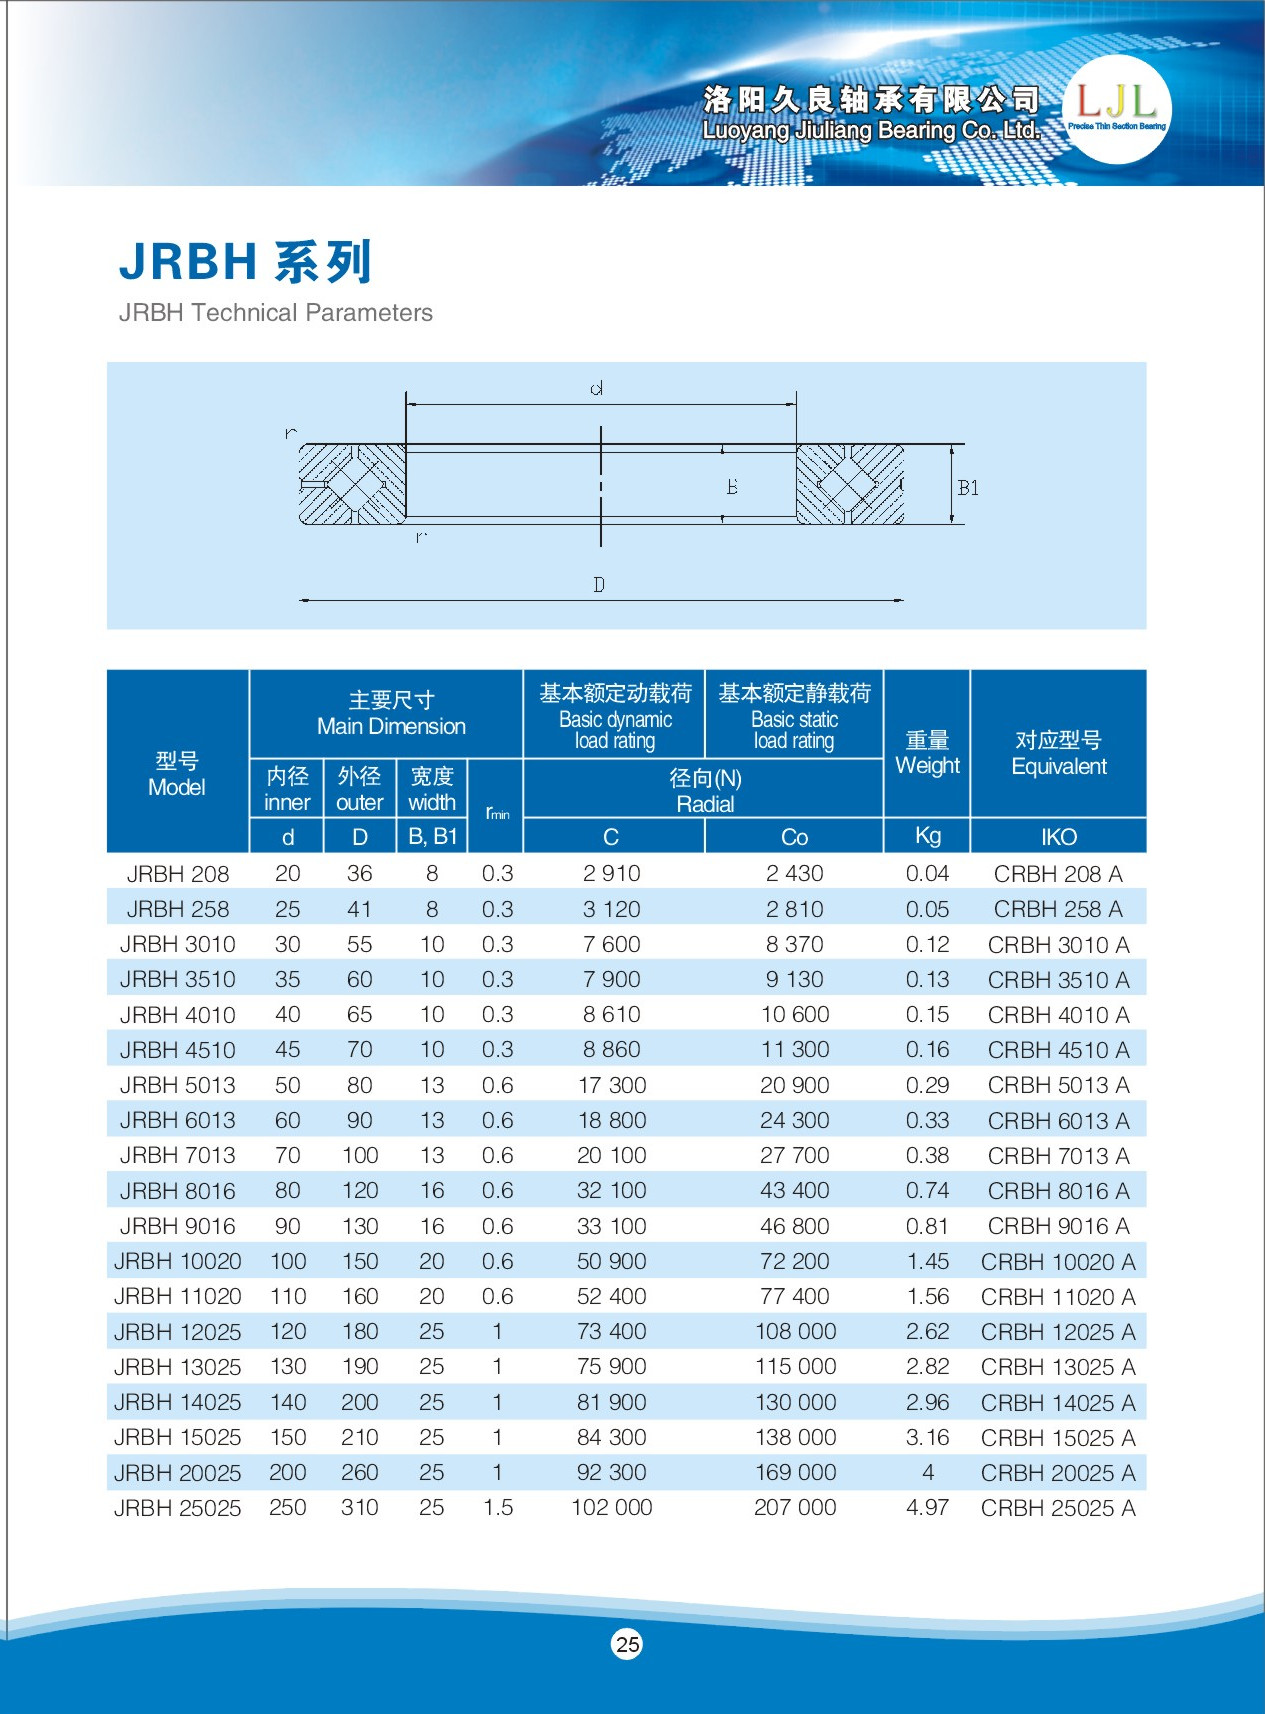 JRBH 208	 | 
JRBH 258	 | 
JRBH 3010	 | 
JRBH 3510	 | 
JRBH 4010	 | 
JRBH 4510	 | 
JRBH 5013	 | 
JRBH 6013	 | 
JRBH 7013	 | 
JRBH 8016	 | 
JRBH 9016	 | 
JRBH 10020	 | 
JRBH 11020	 | 
JRBH 12025	 | 
JRBH 14025	 | 
JRBH 15025	 | 
JRBH 25025	 | 